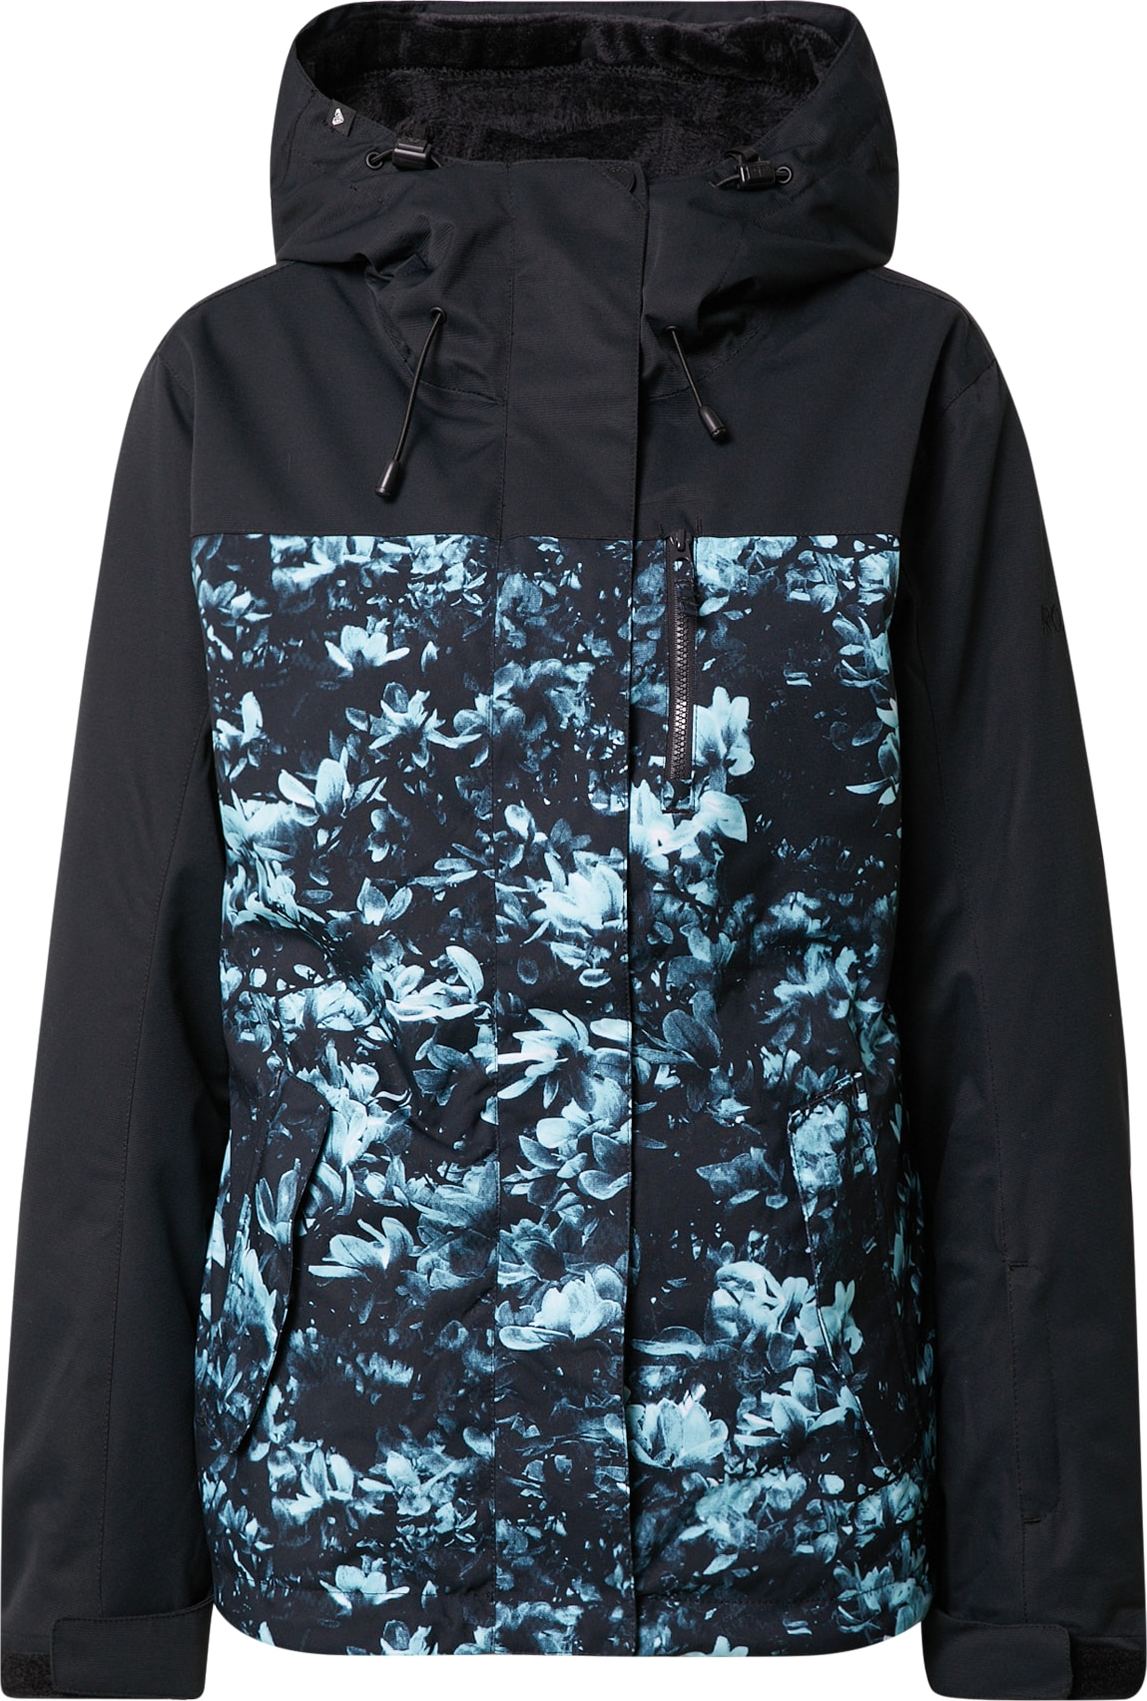 ROXY Outdoorová bunda 'JETTY' chladná modrá / světlemodrá / černá